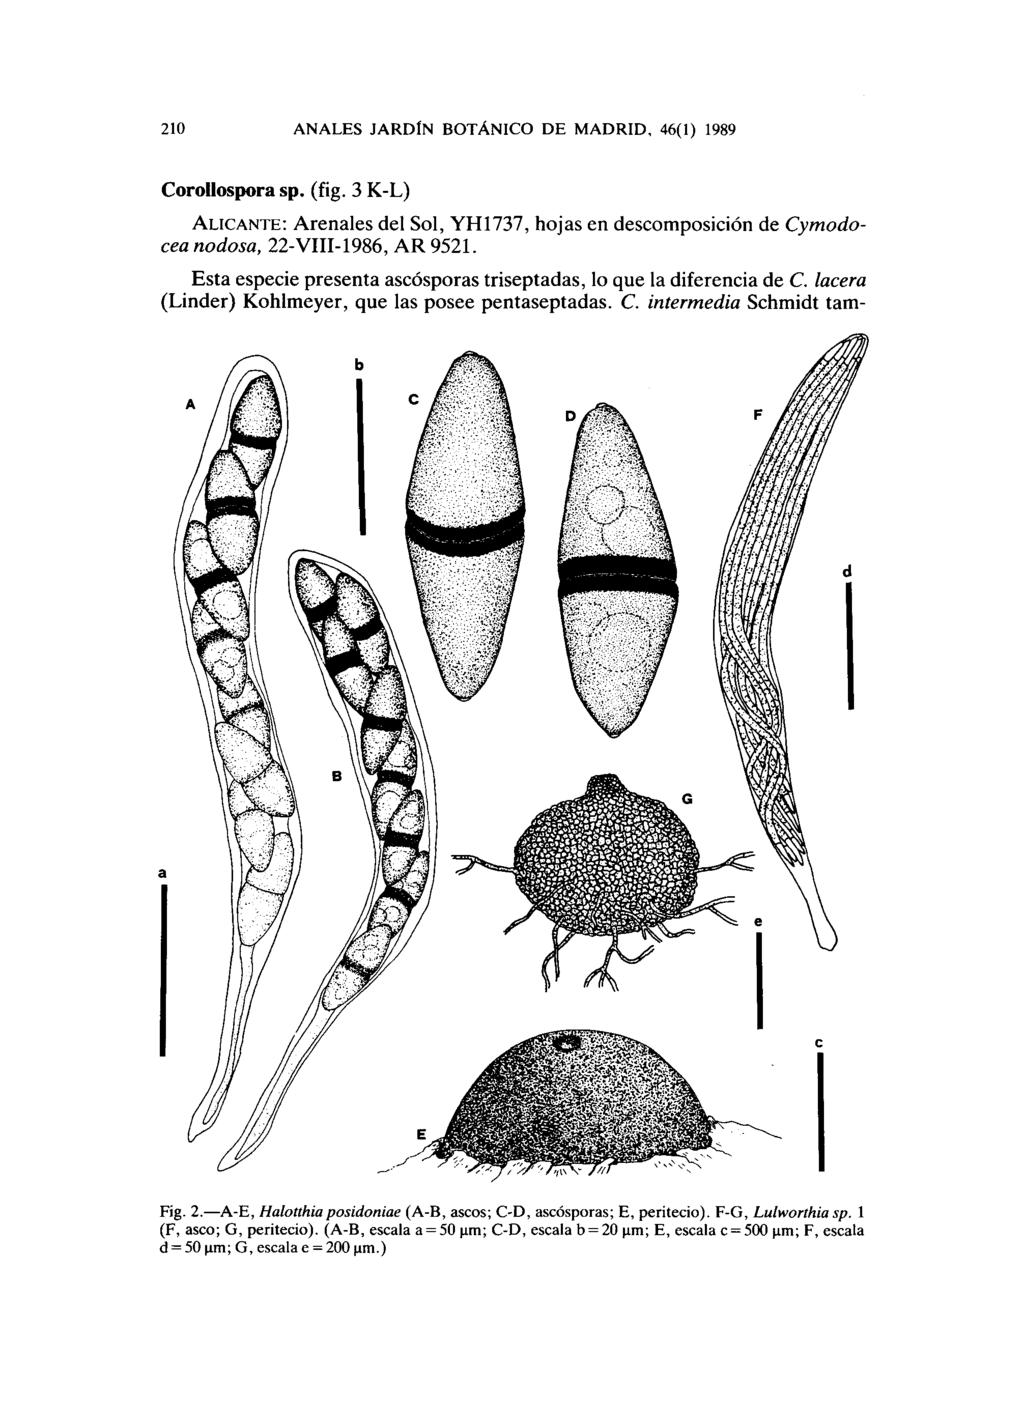 210 ANALES JARDÍN BOTÁNICO DE MADRID, 46(1) 1989 Corollospora sp. (fig. 3 K-L) ALICANTE: Arenales del Sol, YH1737, hojas en descomposición de Cymodocea nodosa, 22-VIII-1986, AR 9521.